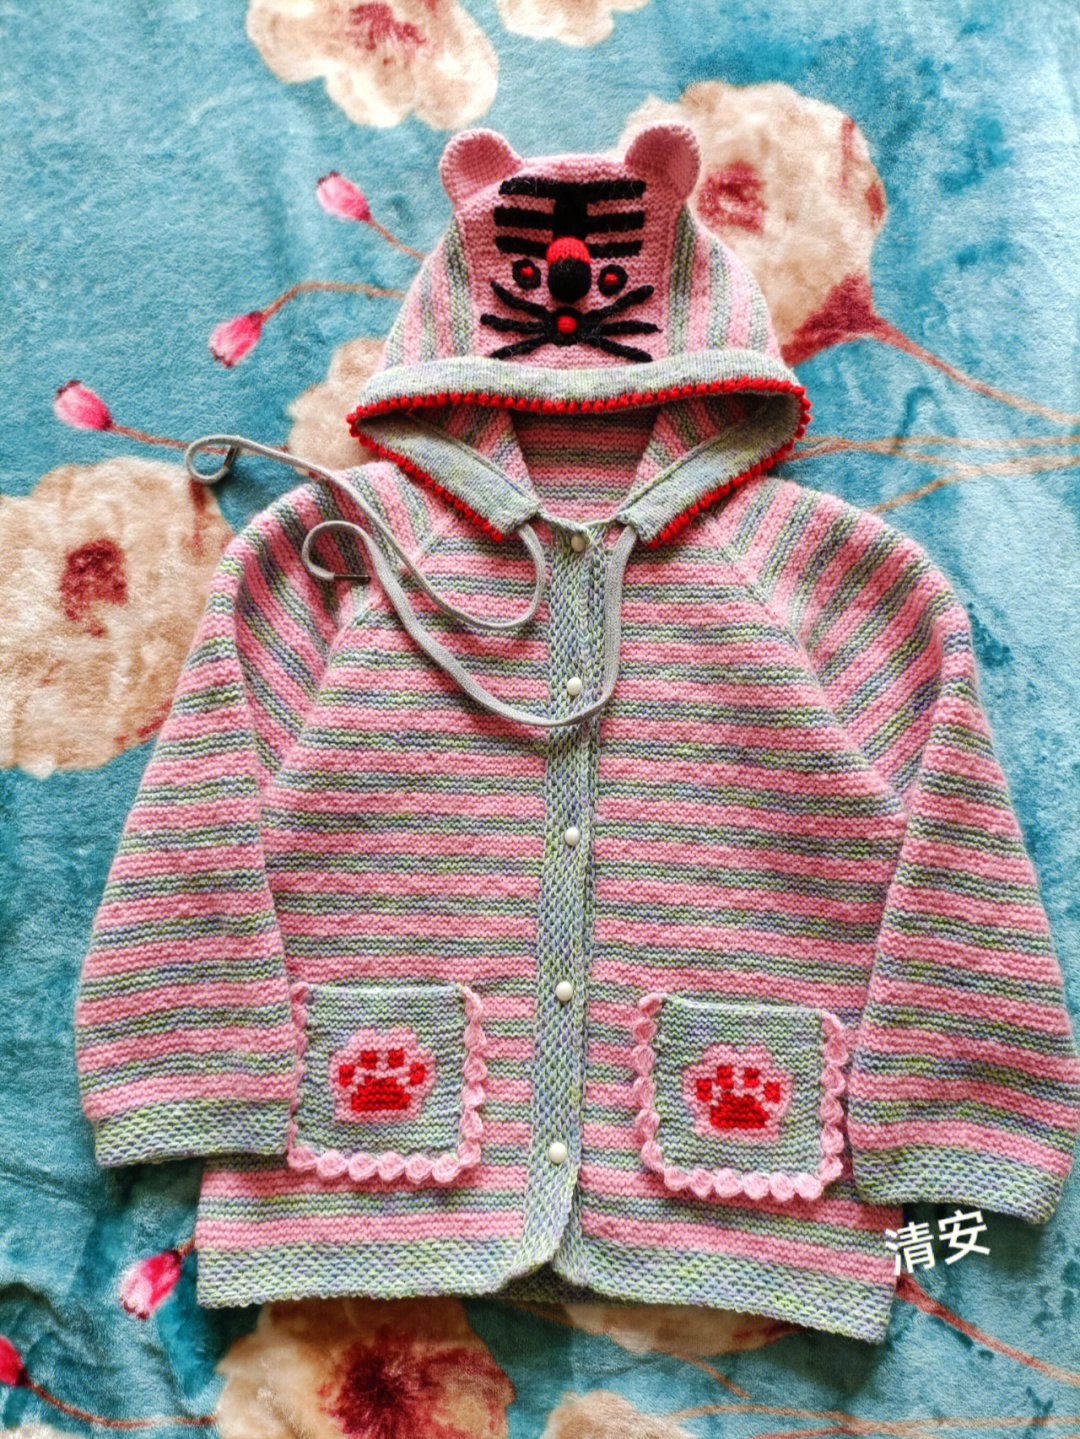 毛衣上动物编织方法图片